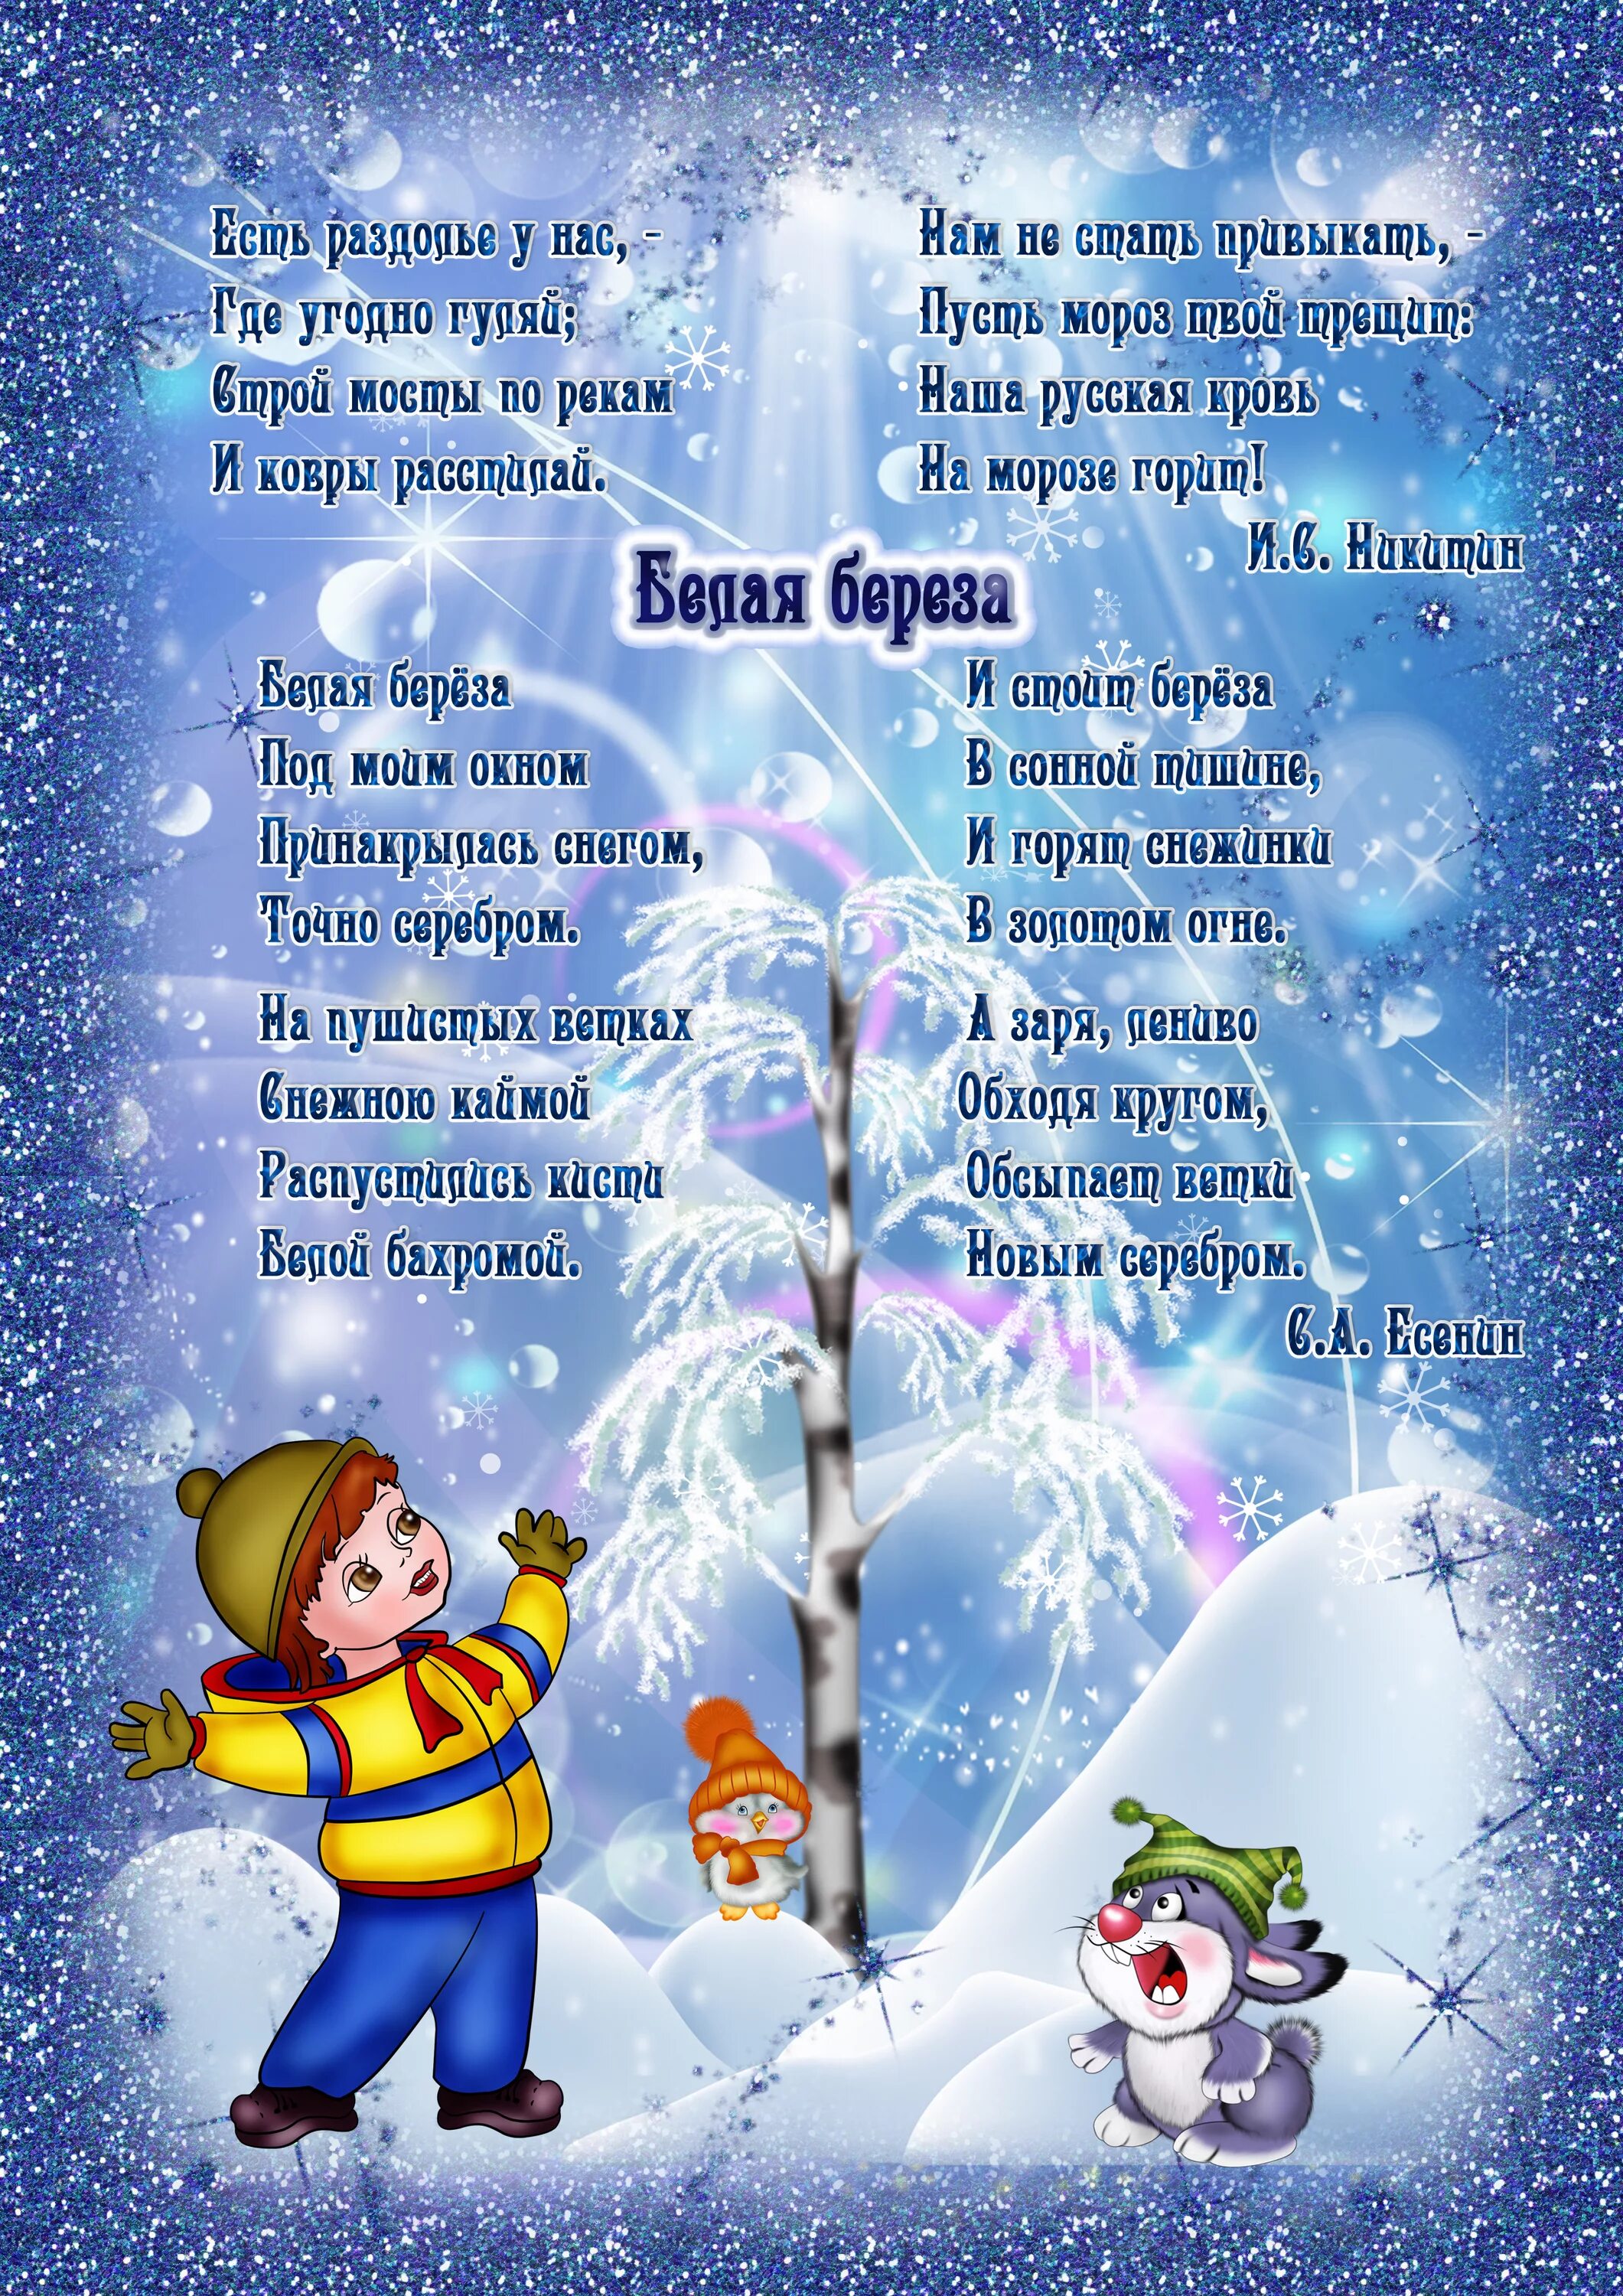 Стих зима легкий. Стихотворение про зиму для детей 6-7 лет для заучивания. Стихи для детей 5 лет для заучивания про зиму. Стихи про зиму для детей 6-7 лет для заучивания. Детские стихи про зиму.